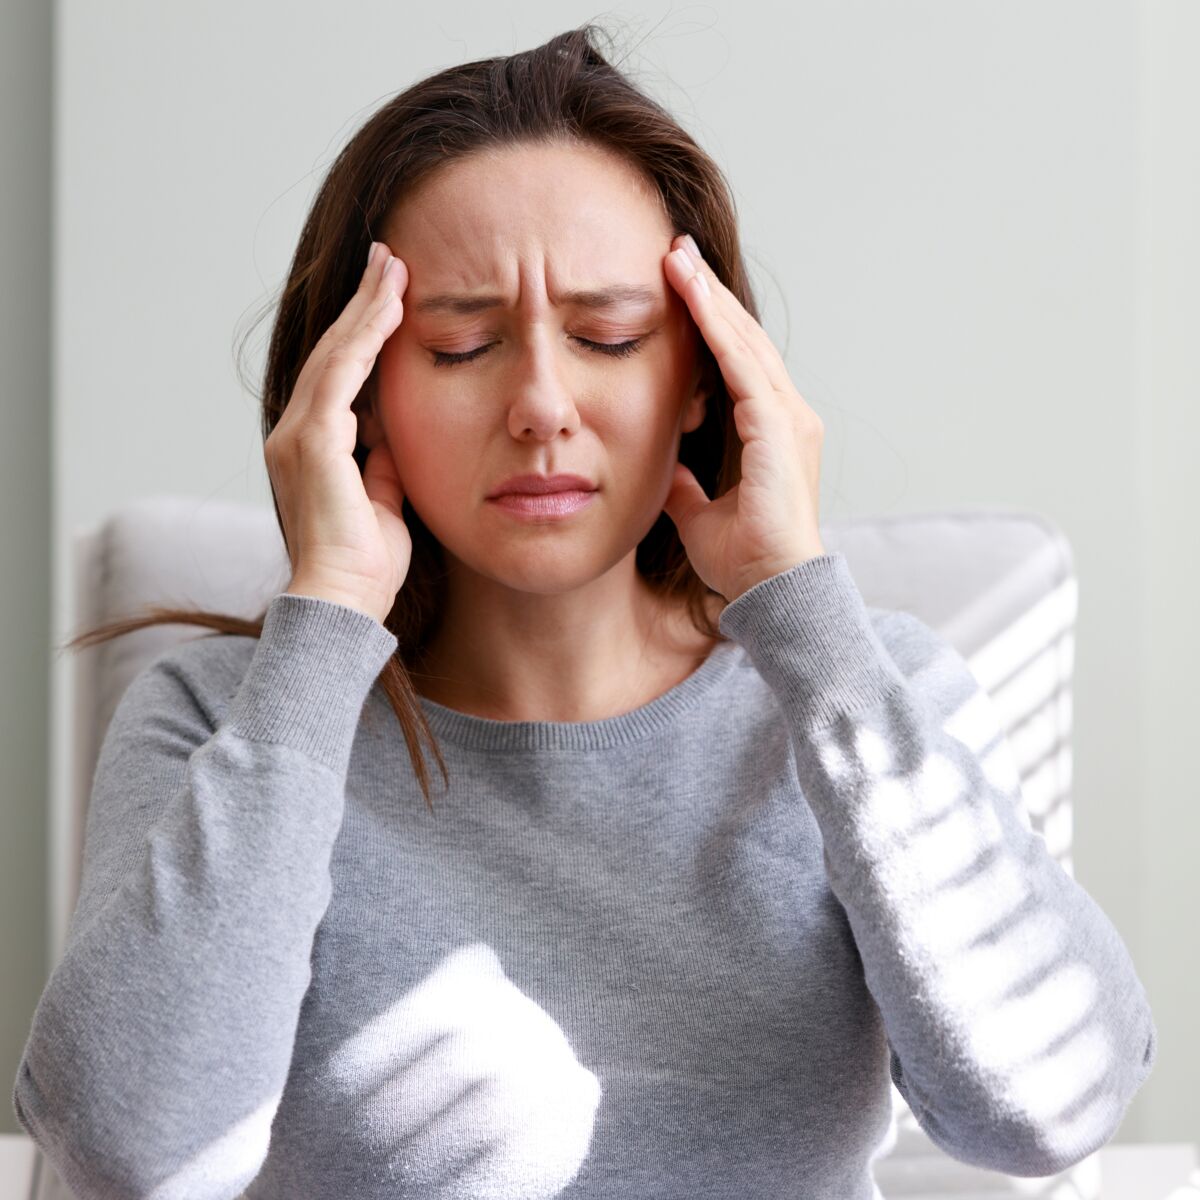 Migraine cataméniale : tout sur les migraines pendant les règles